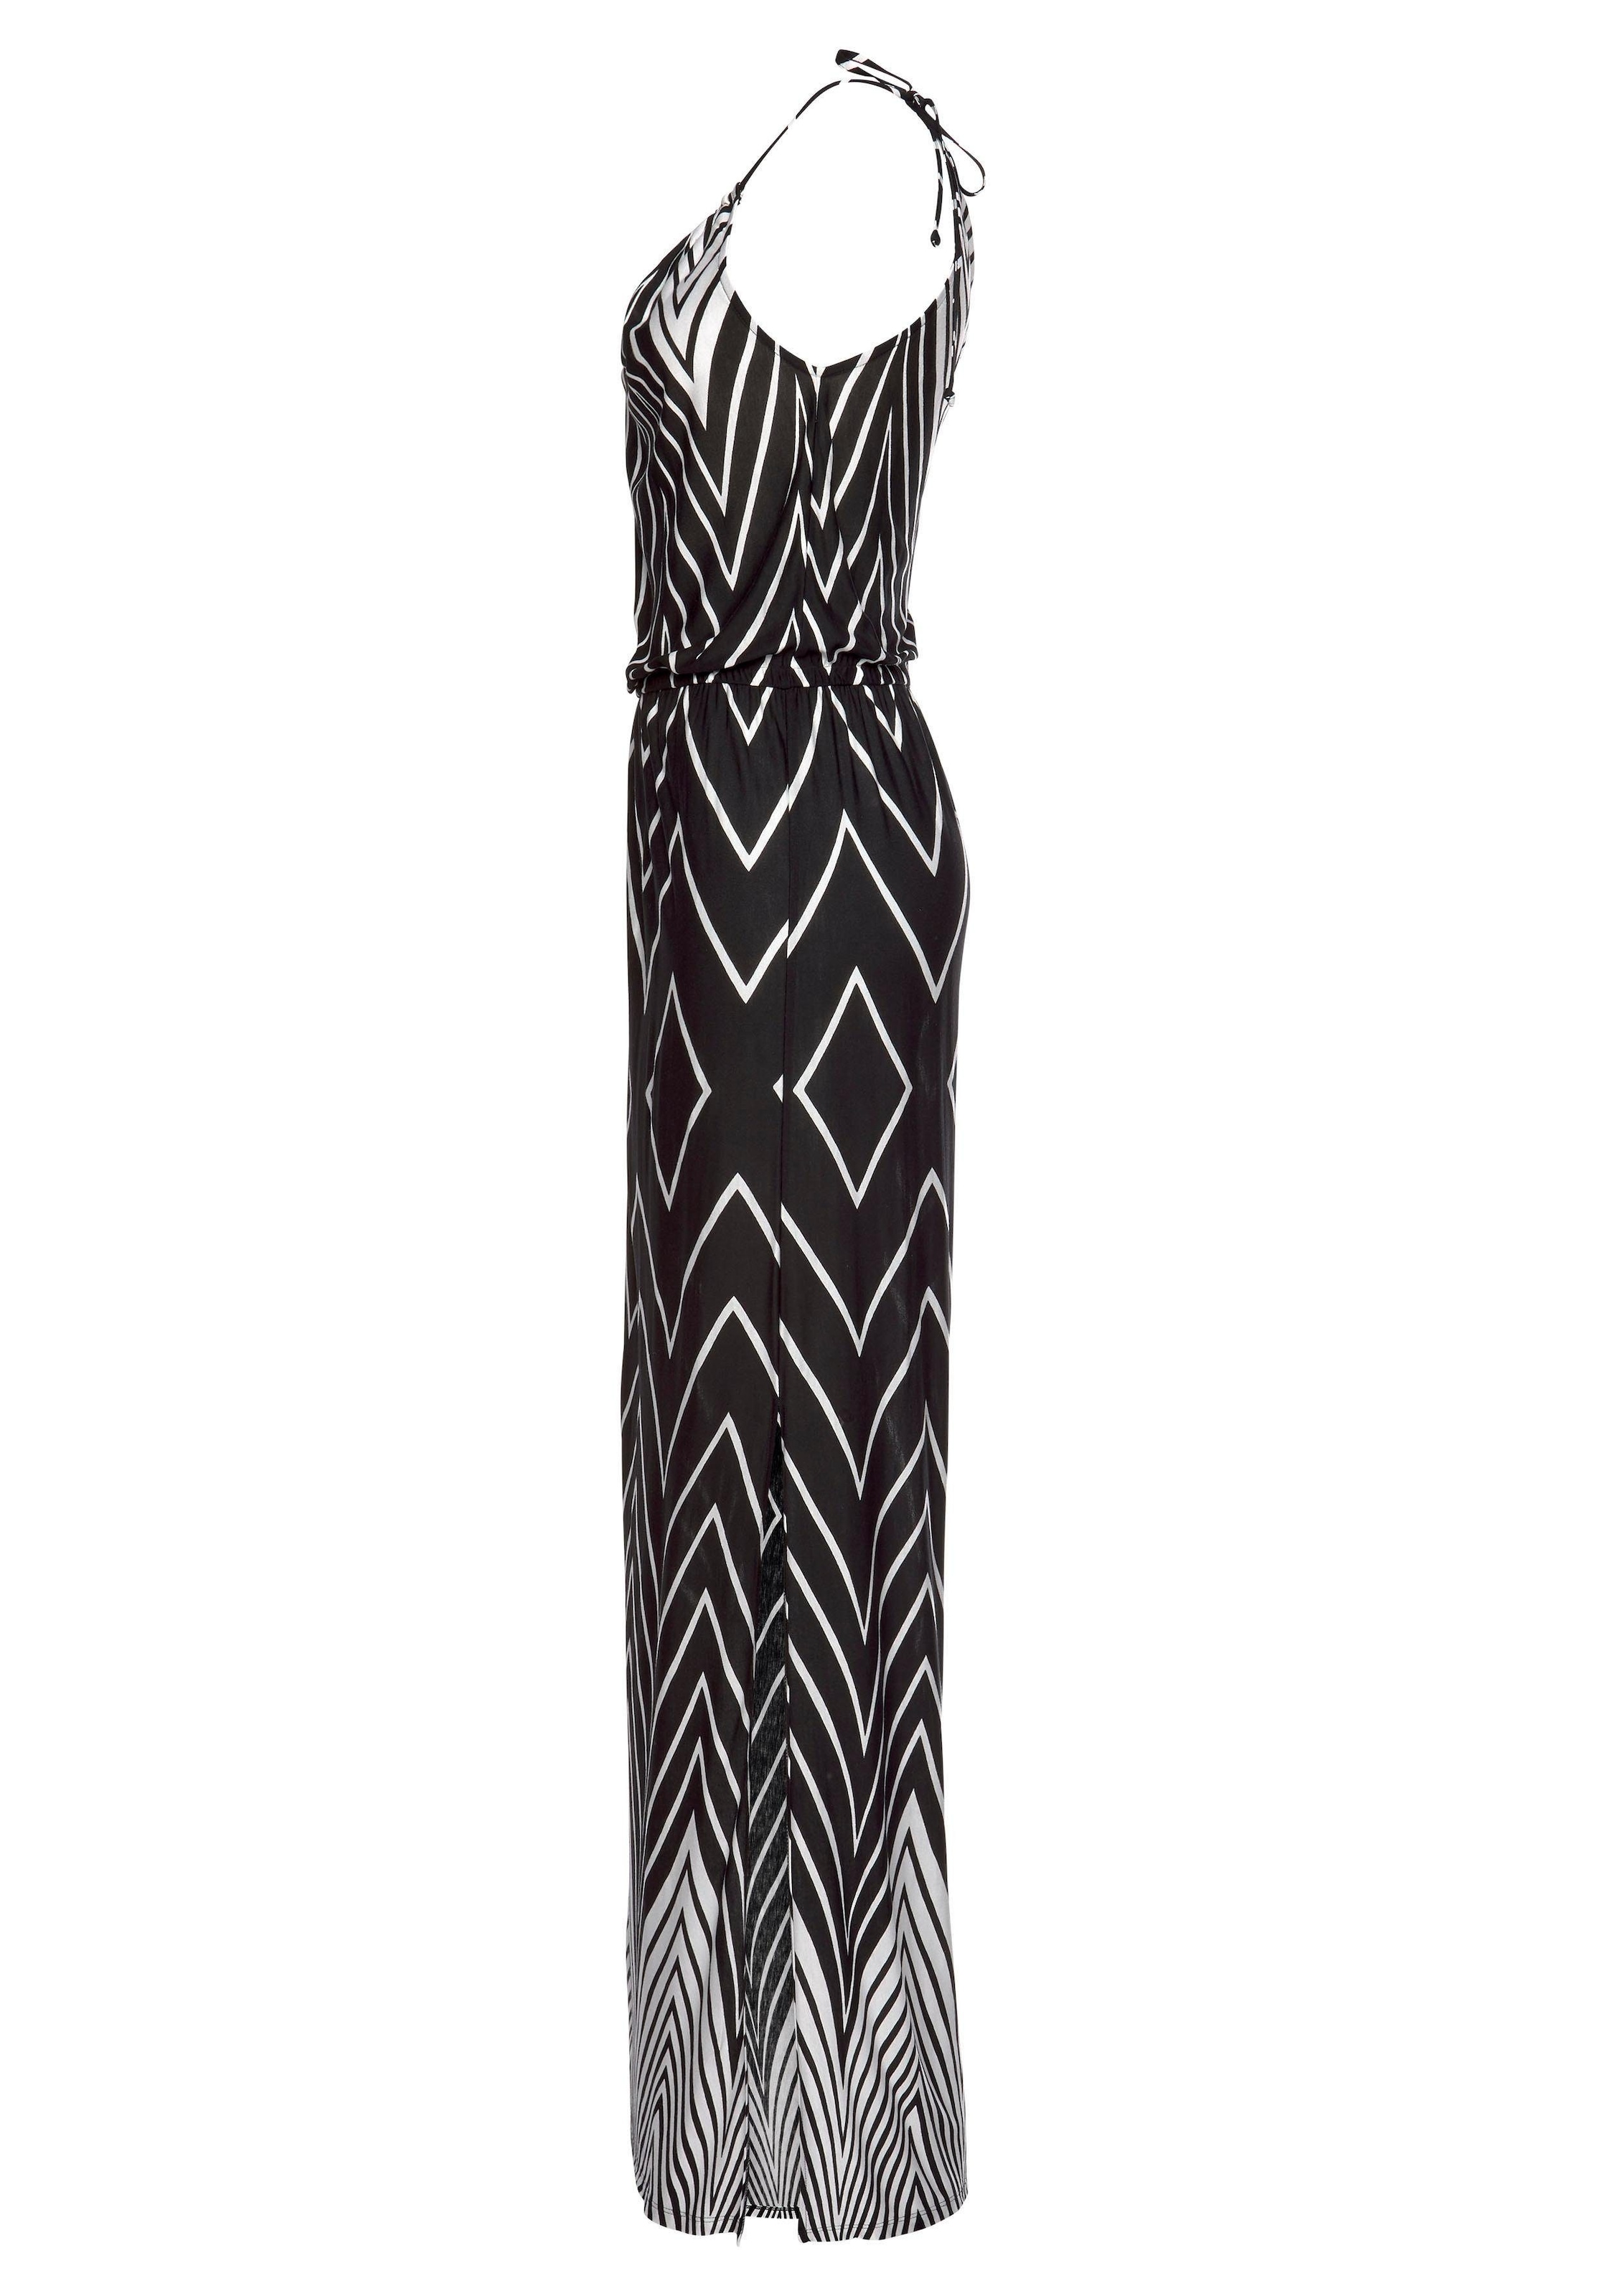 LASCANA Maxikleid, im Schwarz-Weiß-Design mit Schlitz, Sommerkleid, Strandkleid